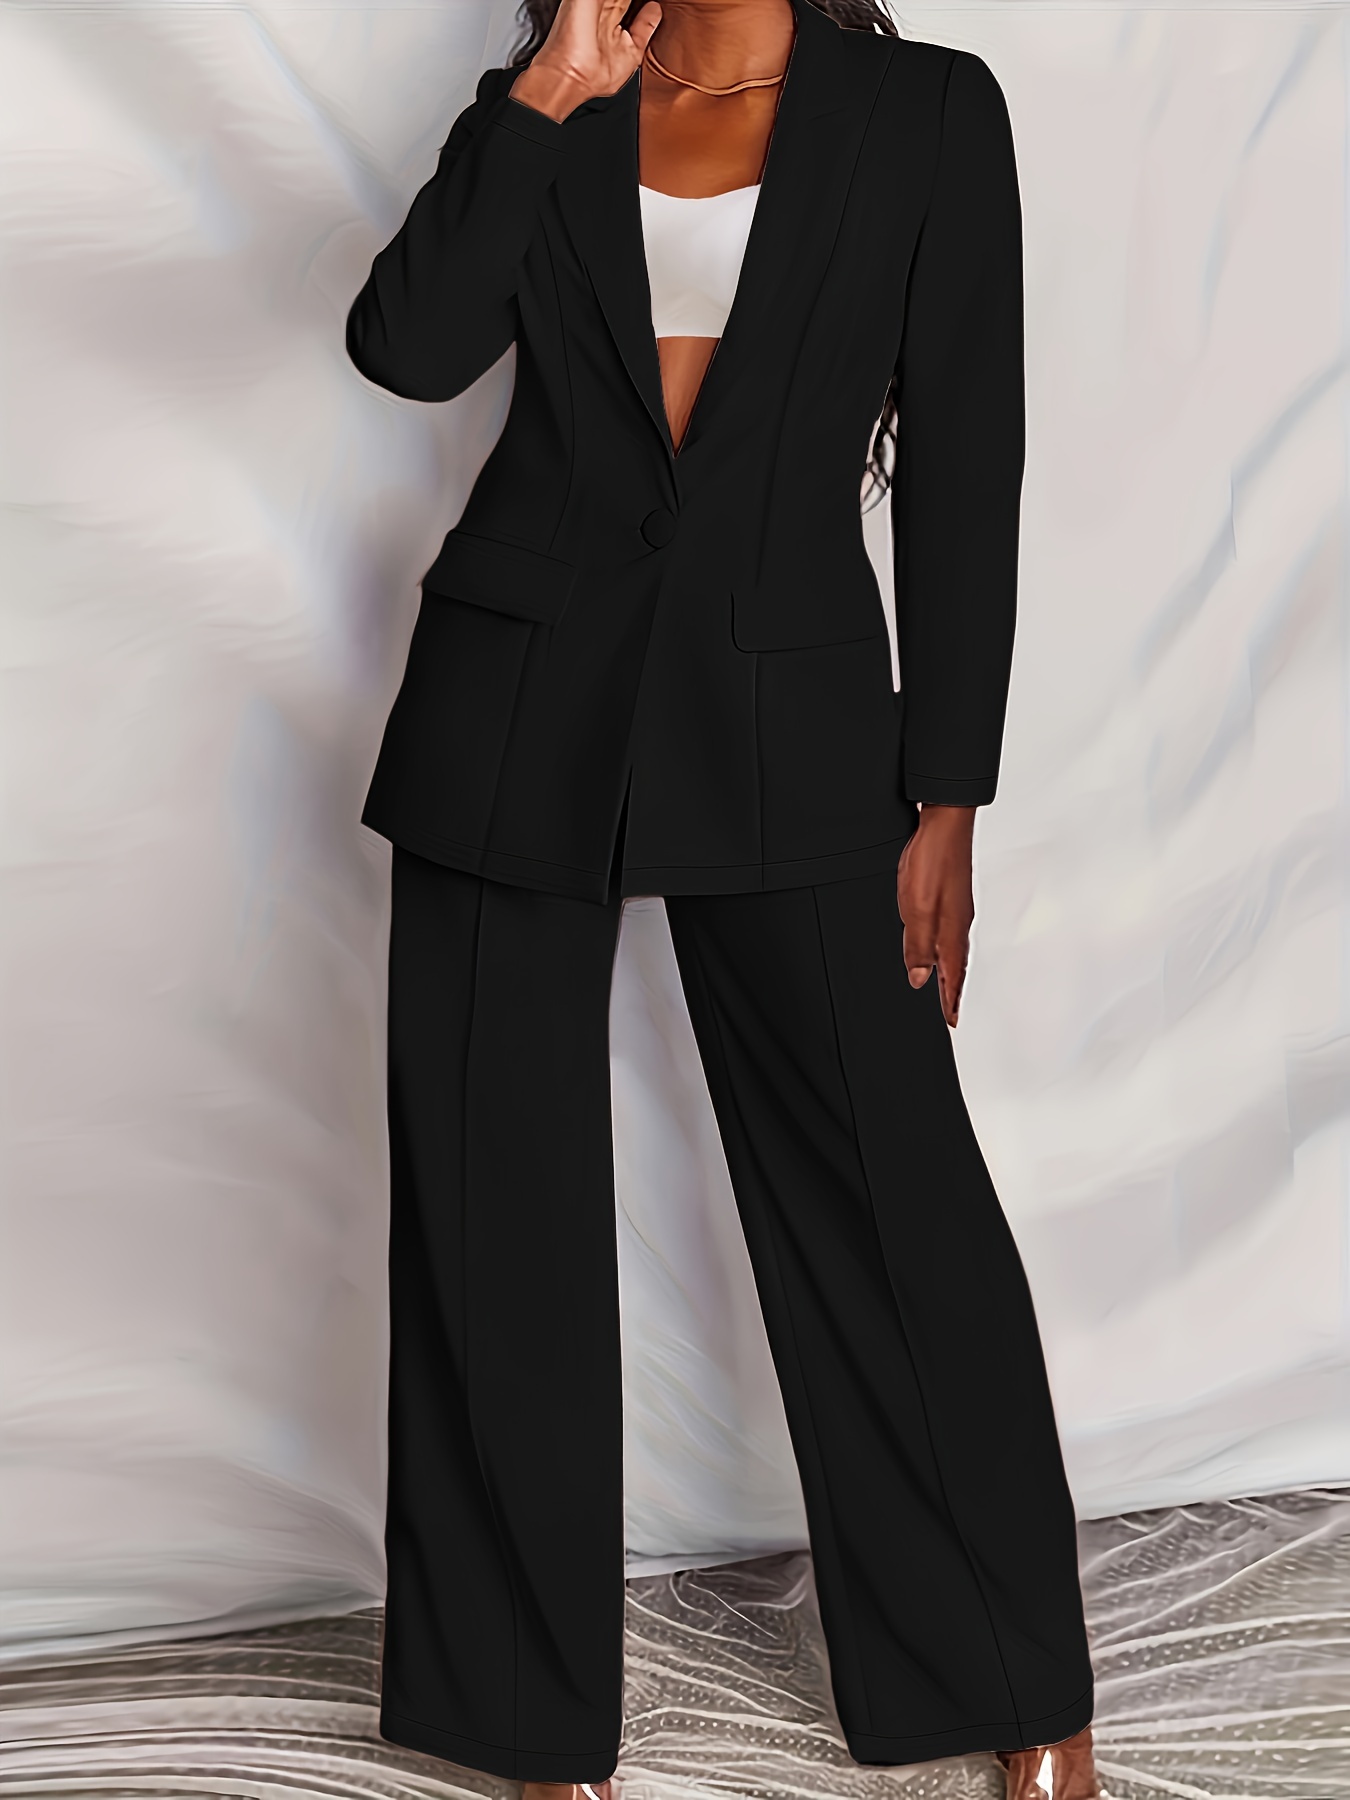 Plus Size Long Sleeve Women's Suit Set Button Solid Color Business